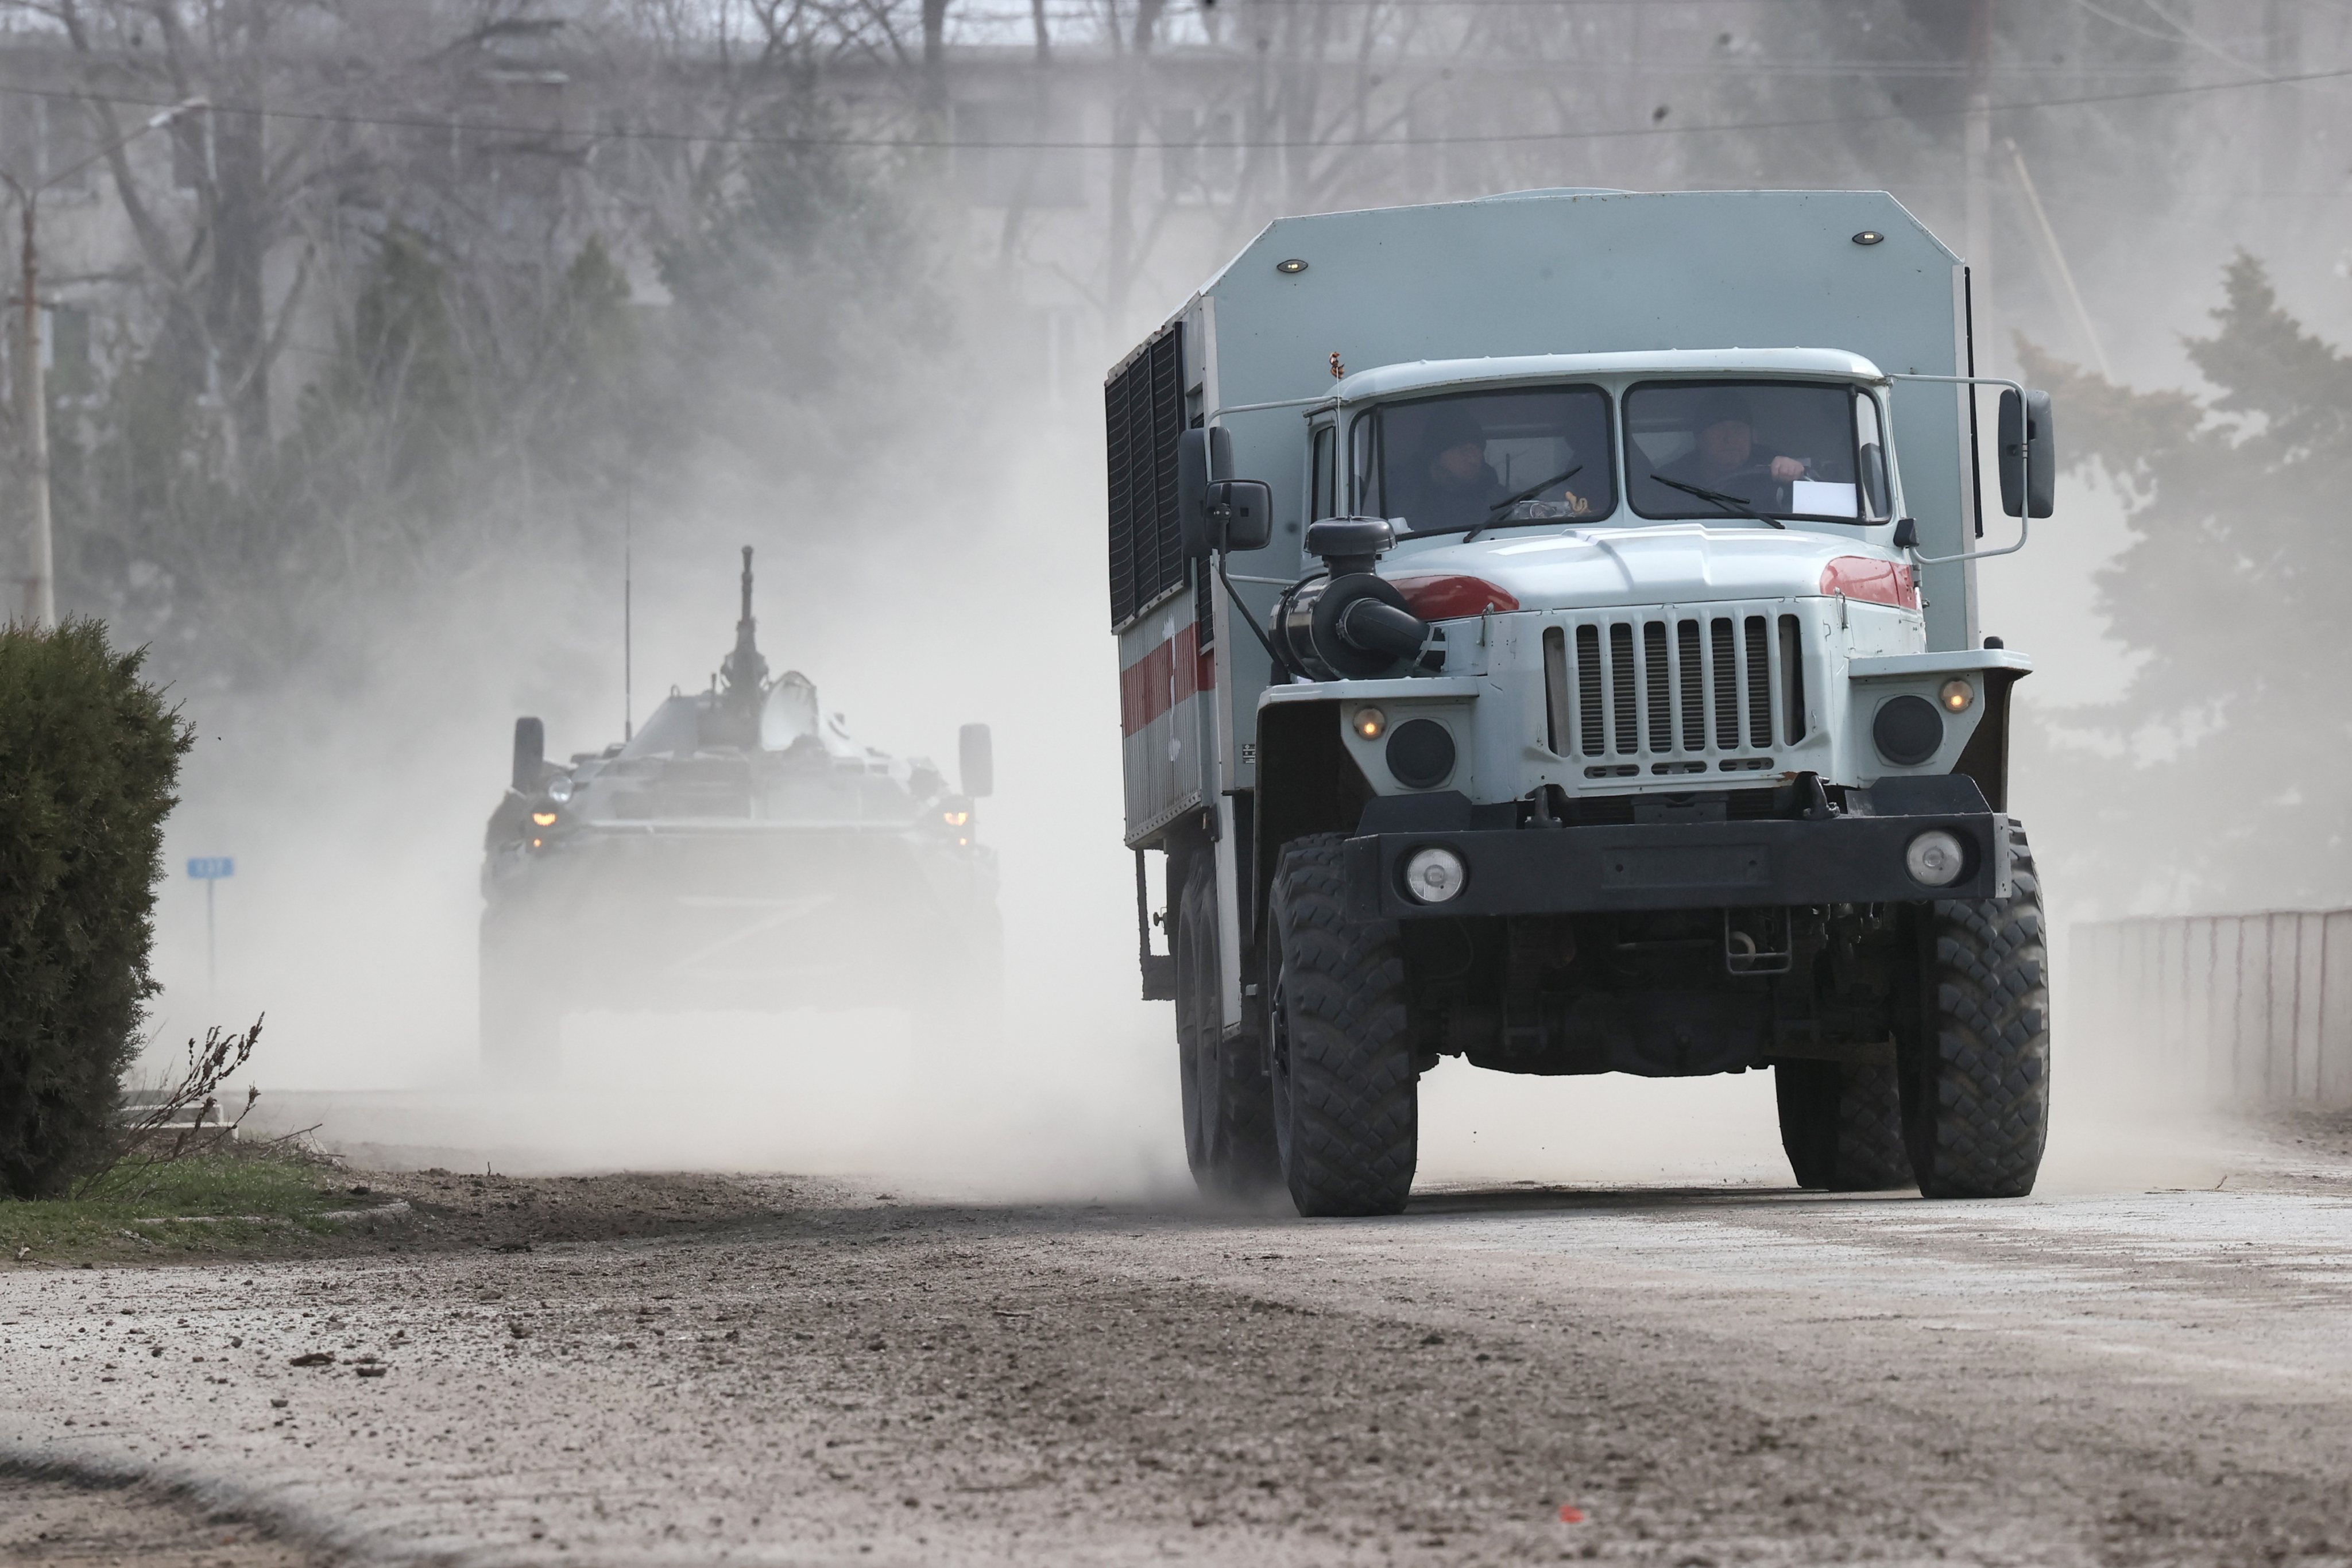 Military hardware moved across Crimea, Russia